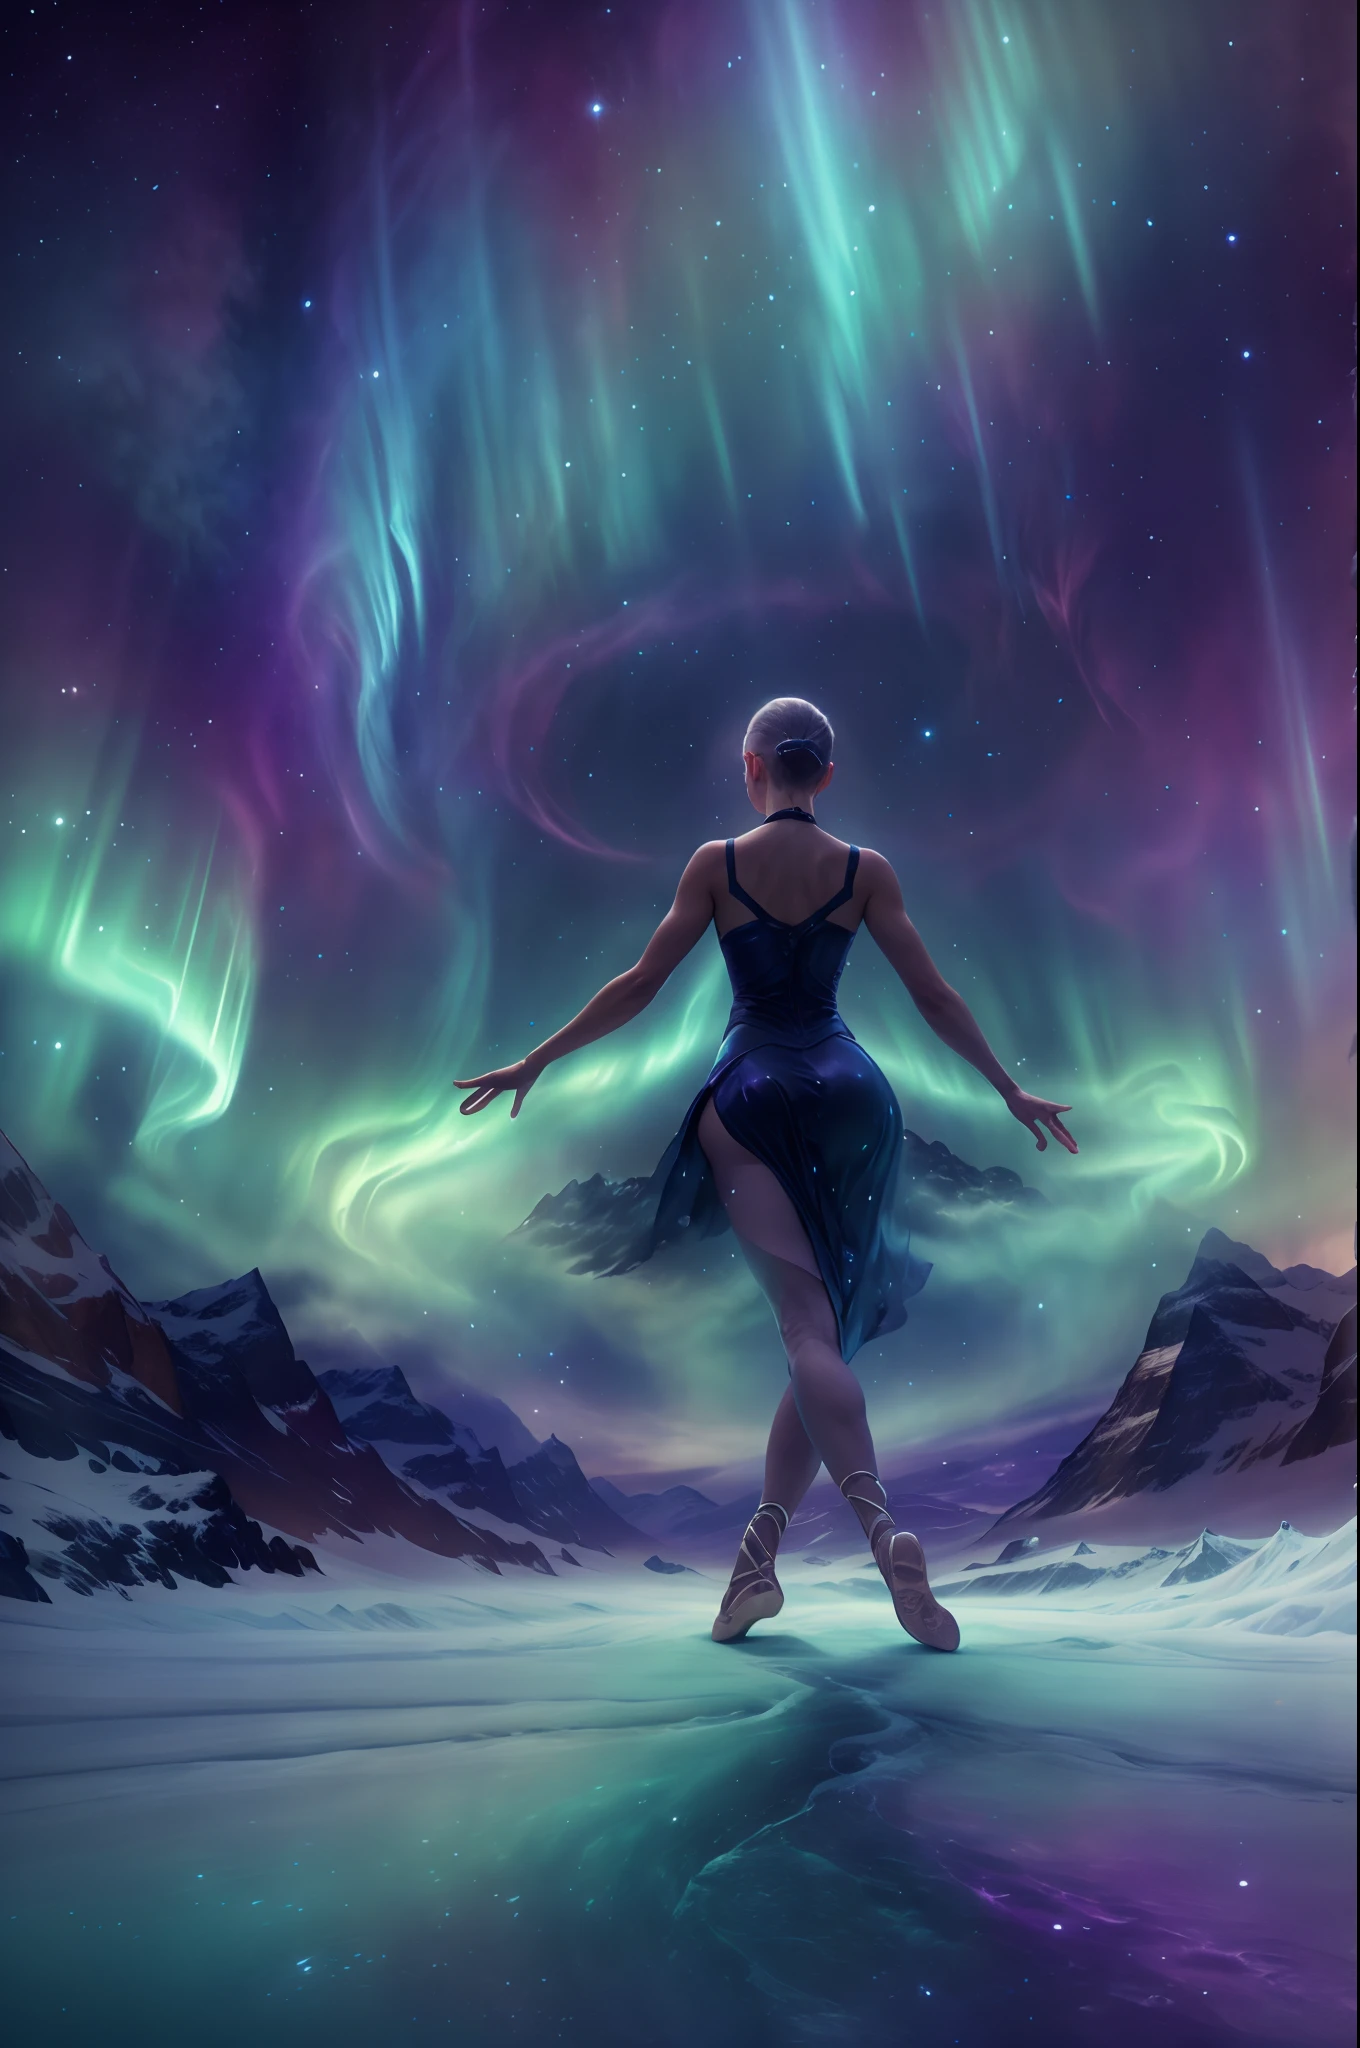 （北极光下冰岛上一位女演员跳芭蕾舞的背影),由烟雾制成, 绿色和紫色的北极光流星雨在山间穿梭, 戏剧性的北极光, 北极光背景,  北极光背景, 华丽背景, 天空中出现北极光, 超现实、梦幻般的太空北极光景观, 浅黑色和翠绿色, 8K 分辨率, 简约背景, 以向上的视角进行单色思考，超清晰的神秘芭蕾动作，动作柔和而动感, 烟雾效应和神秘性. 背景必须充满漩涡和动态彩色烟雾，穿上芭蕾舞者烟熏漩涡连衣裙.灵感来源于一件飘逸的紫色烟熏连衣裙，伴随着快速旋转的动作, 关键要素::传达神秘, 烟雾缭绕，色彩缤纷的氛围.强调动态, 构图中的旋转运动.只关注视觉图像; 排除任何文本.其他指南:艺术作品应该唤起一种好奇和惊奇的感觉.以快节奏和流畅的动作捕捉芭蕾的精髓.